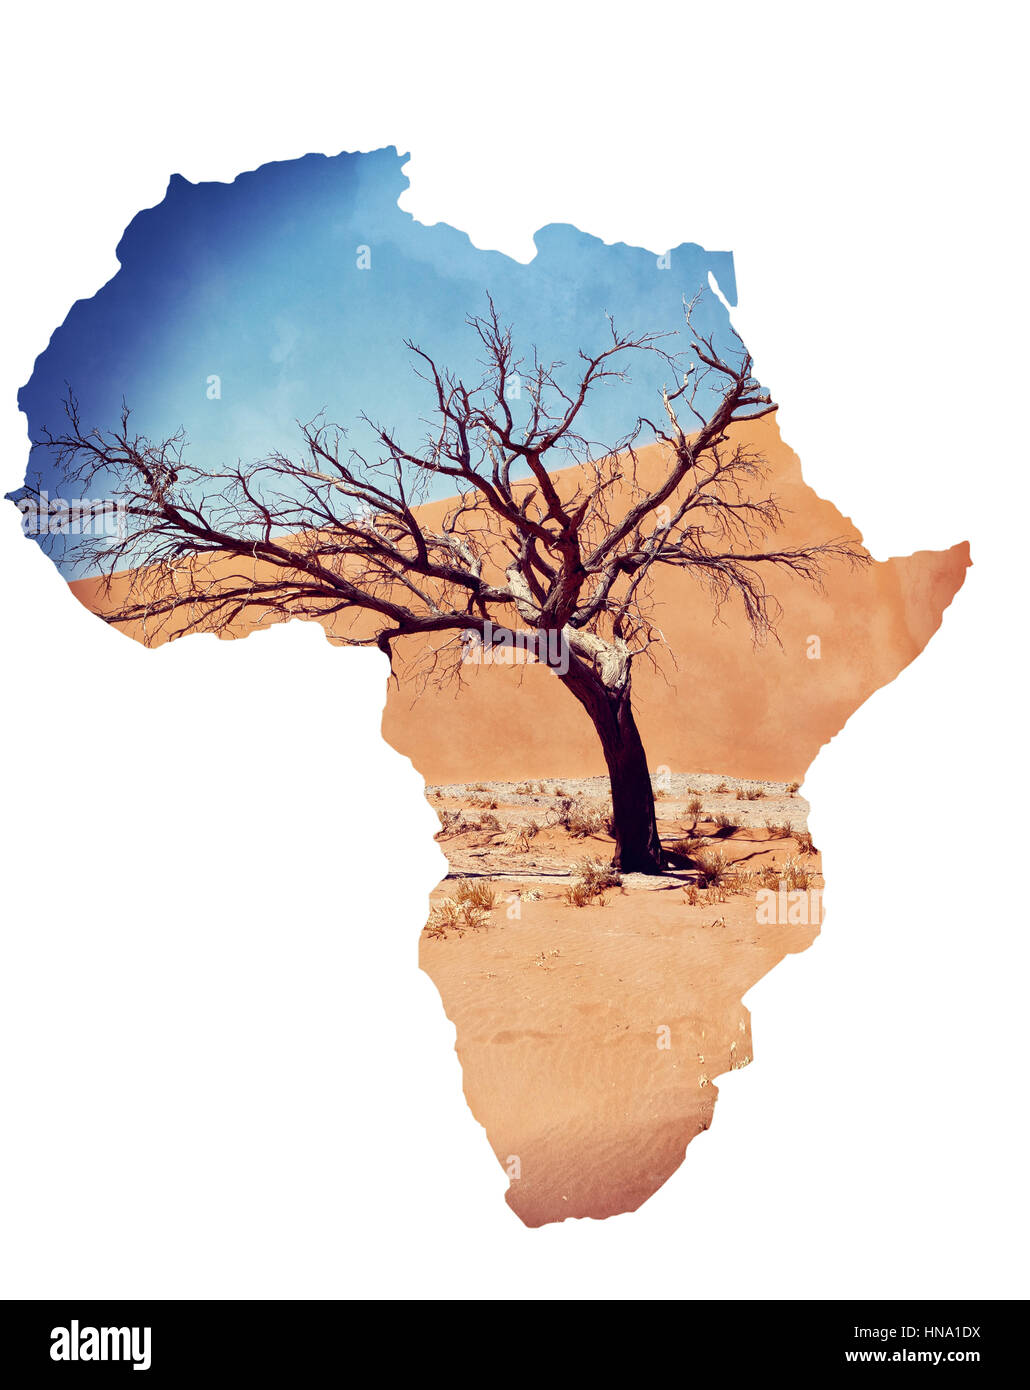 Düne 45 im Sossusvlei Namibia mit toter Baum, best-of Namibia Landschaft, Düne 45 ist die größte Düne der Welt. Karte von Afrika Kontinent Konzept Stockfoto